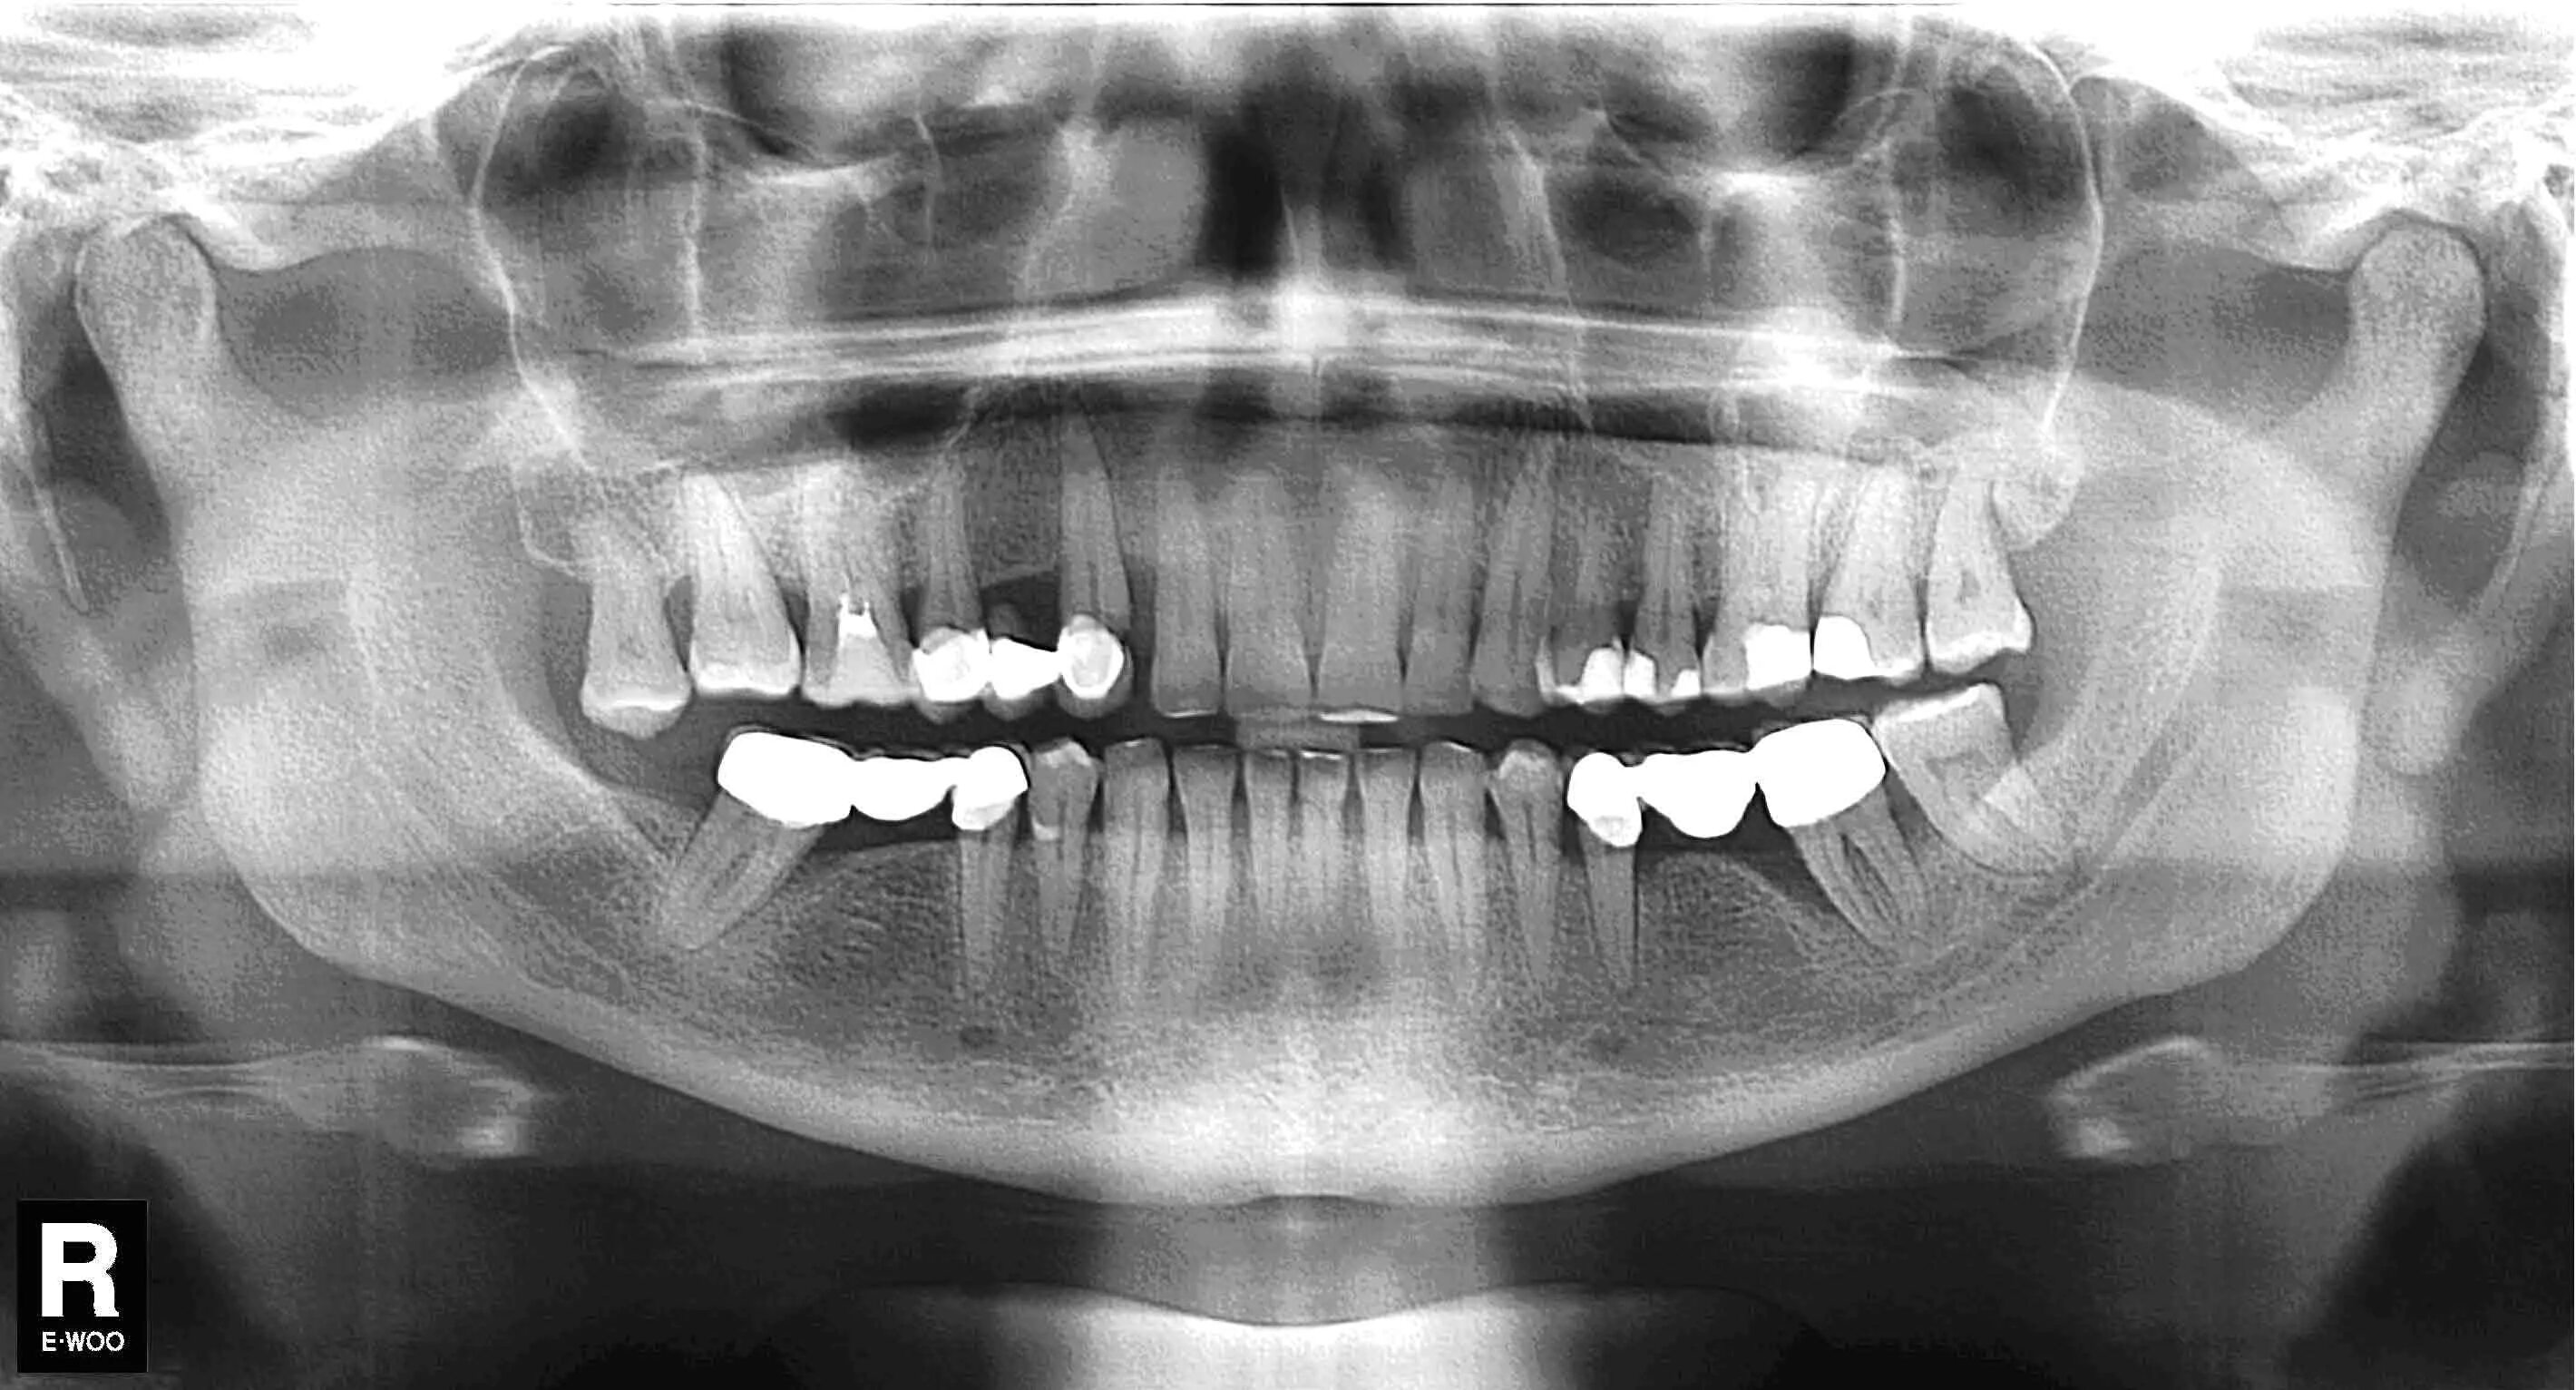 Снимок зубов видное. Ортопантомограмма челюсти. Ортопантомография пародонтит. Ортопантомограмма кариес.